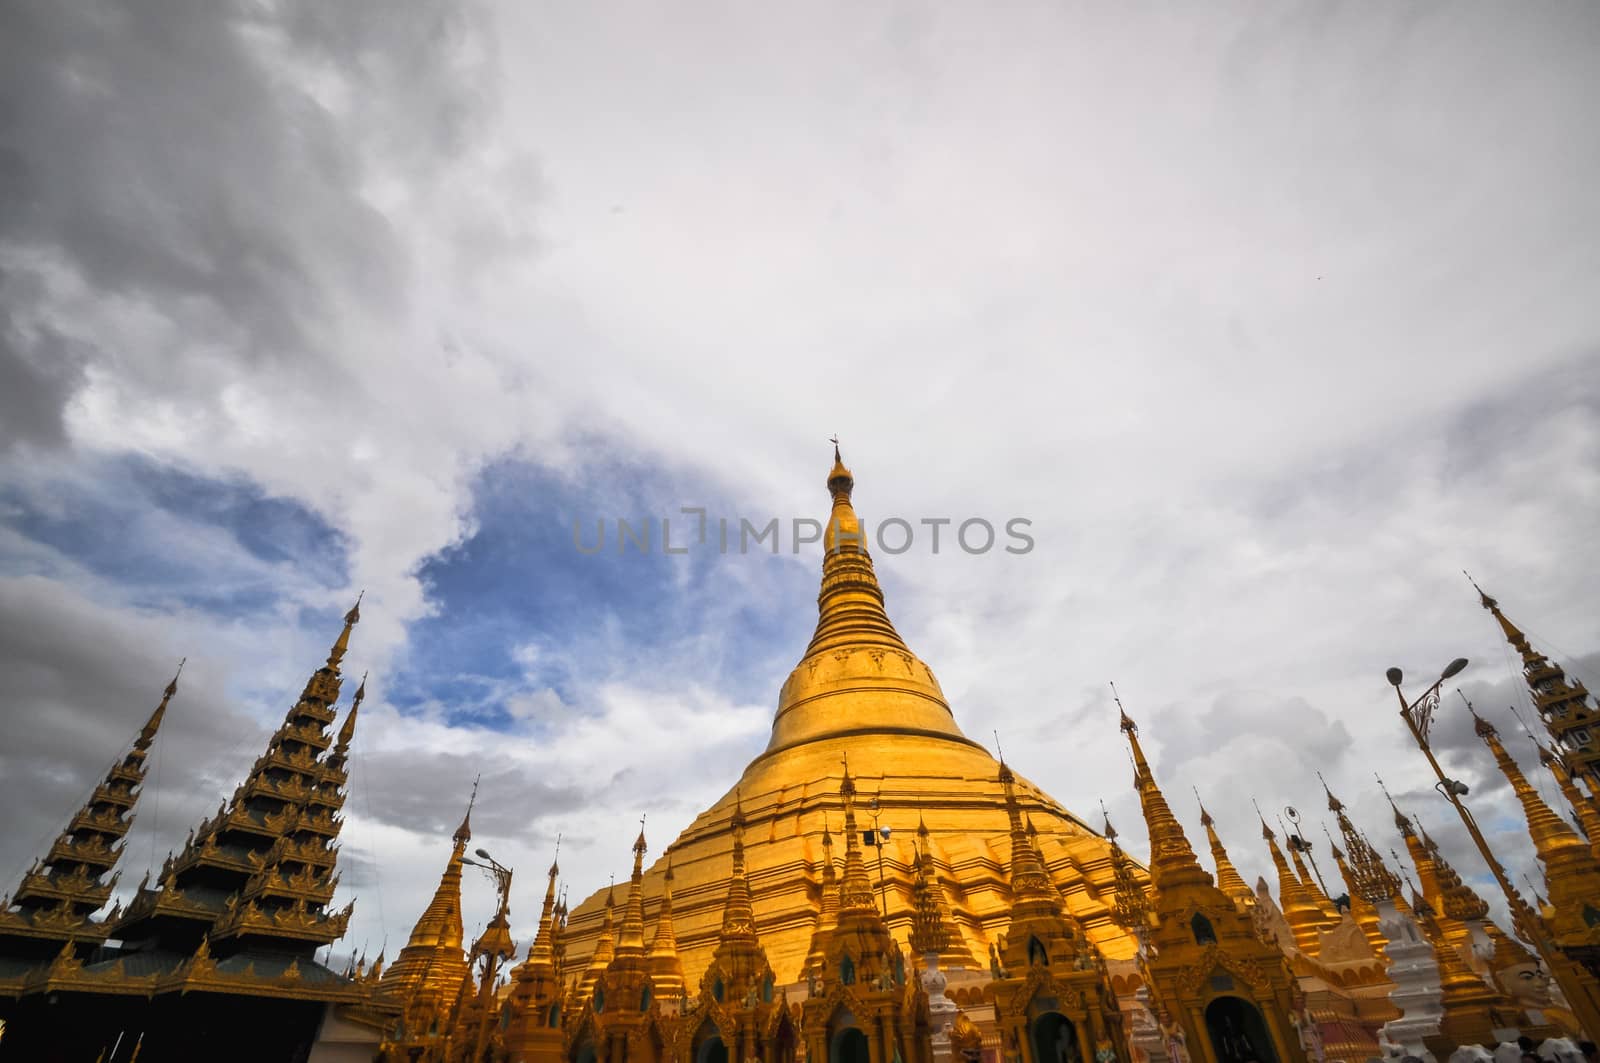 Yangon Myanmar Shwedagon Pagoda Temple  (Burma)